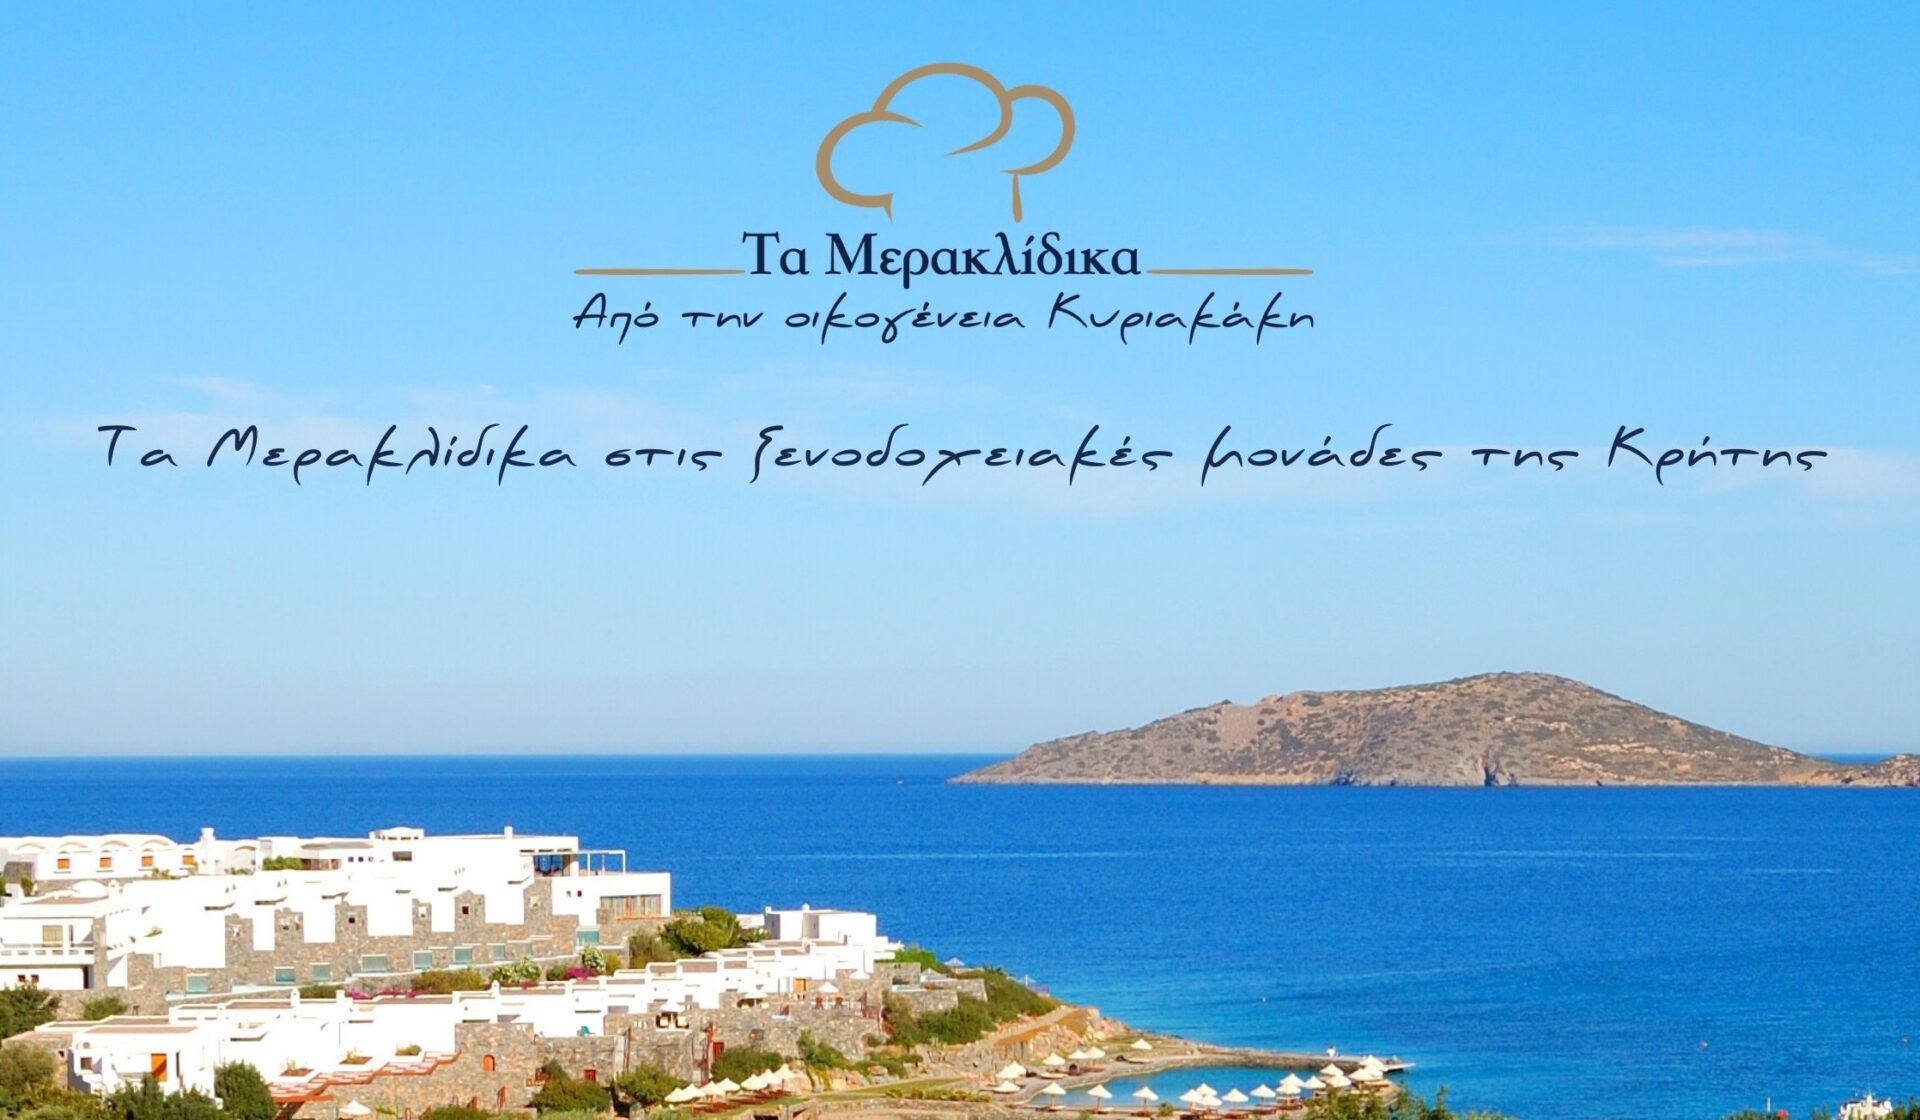 Τα Μερακλίδικα στις ξενοδοχειακές μονάδες της Κρήτης